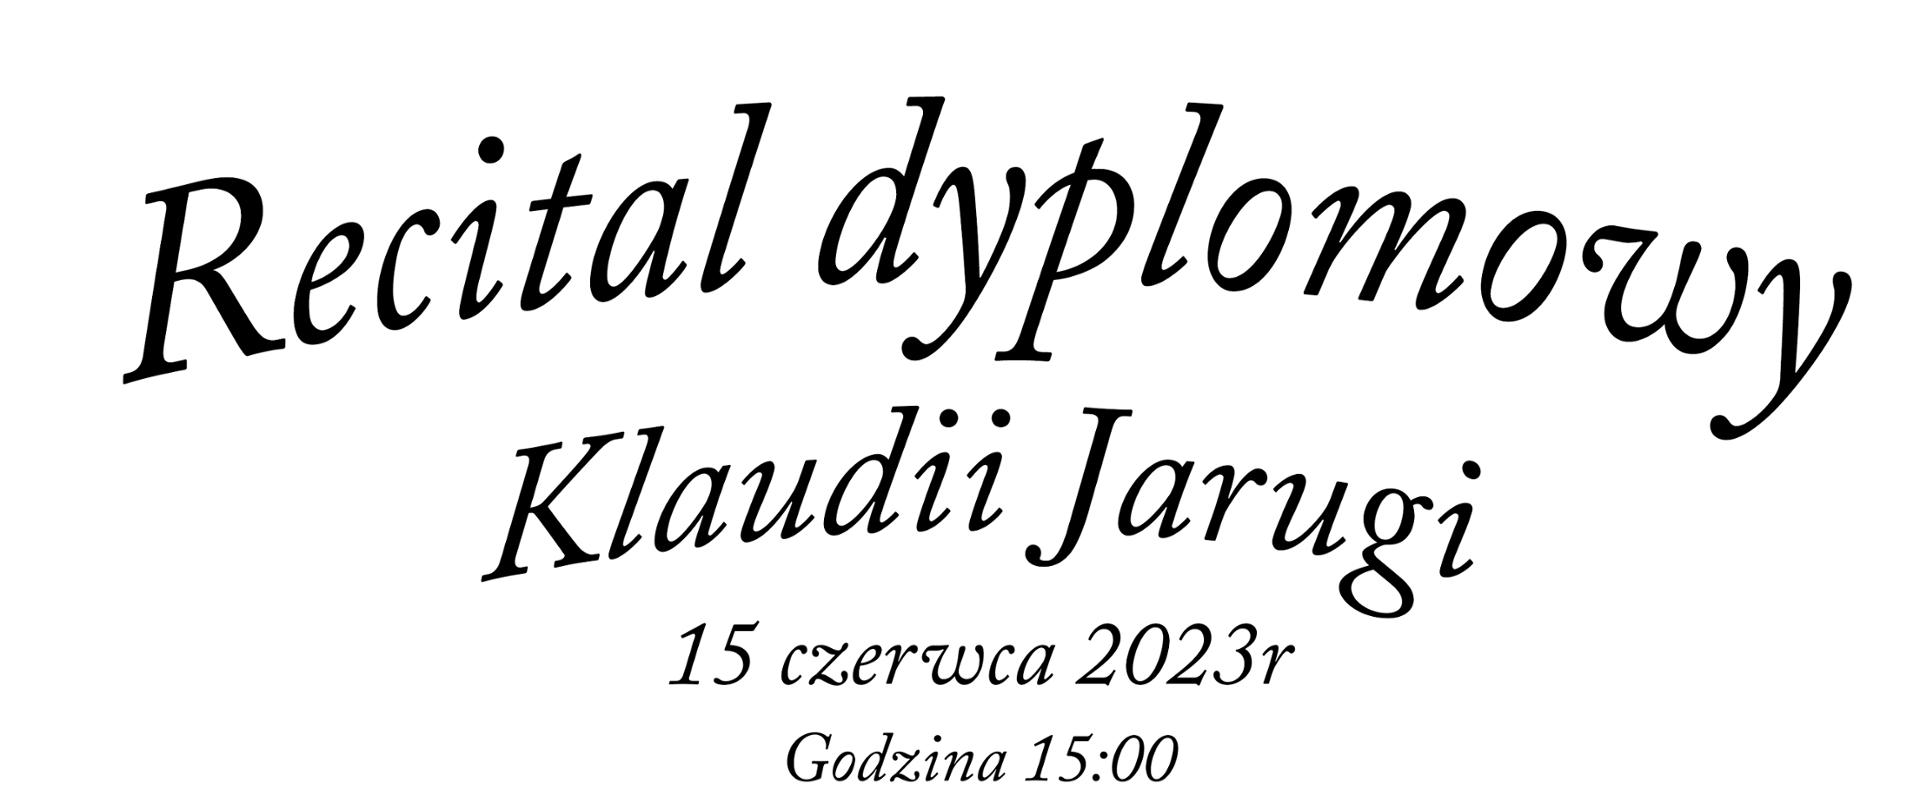 Plakat informujący o recitalu dyplomowym Klaudii Jarugi w dniu 15 czerwca 2023 o godzinie 17.00. Na zdjęciu znajduje się zdjęcie uczennicy grającej na flecie.